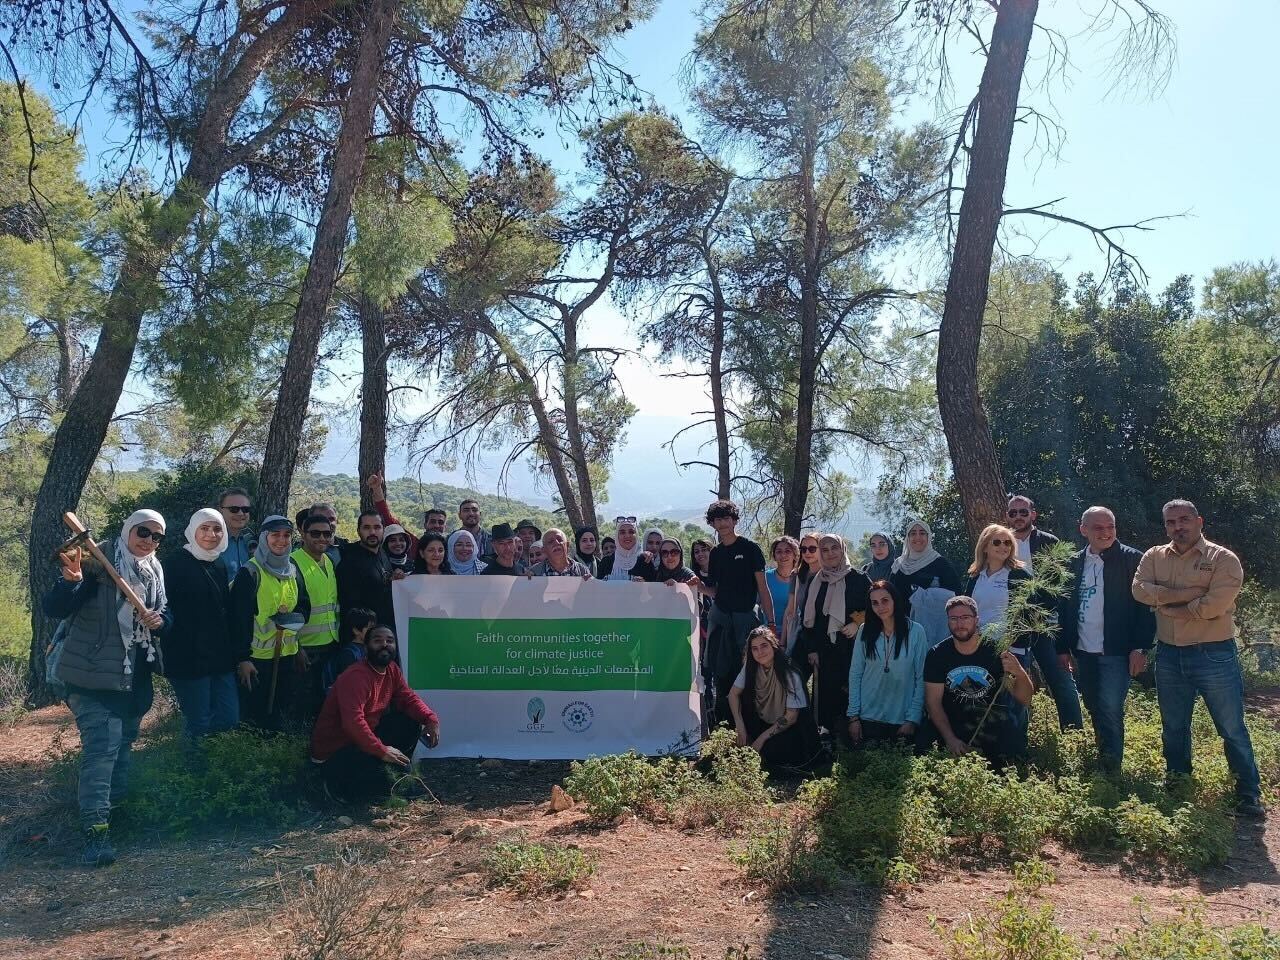 جمعية الجيل الأخضر البيئية في الأردن، مبادرة لإعادة التشجير في محميّة دبين